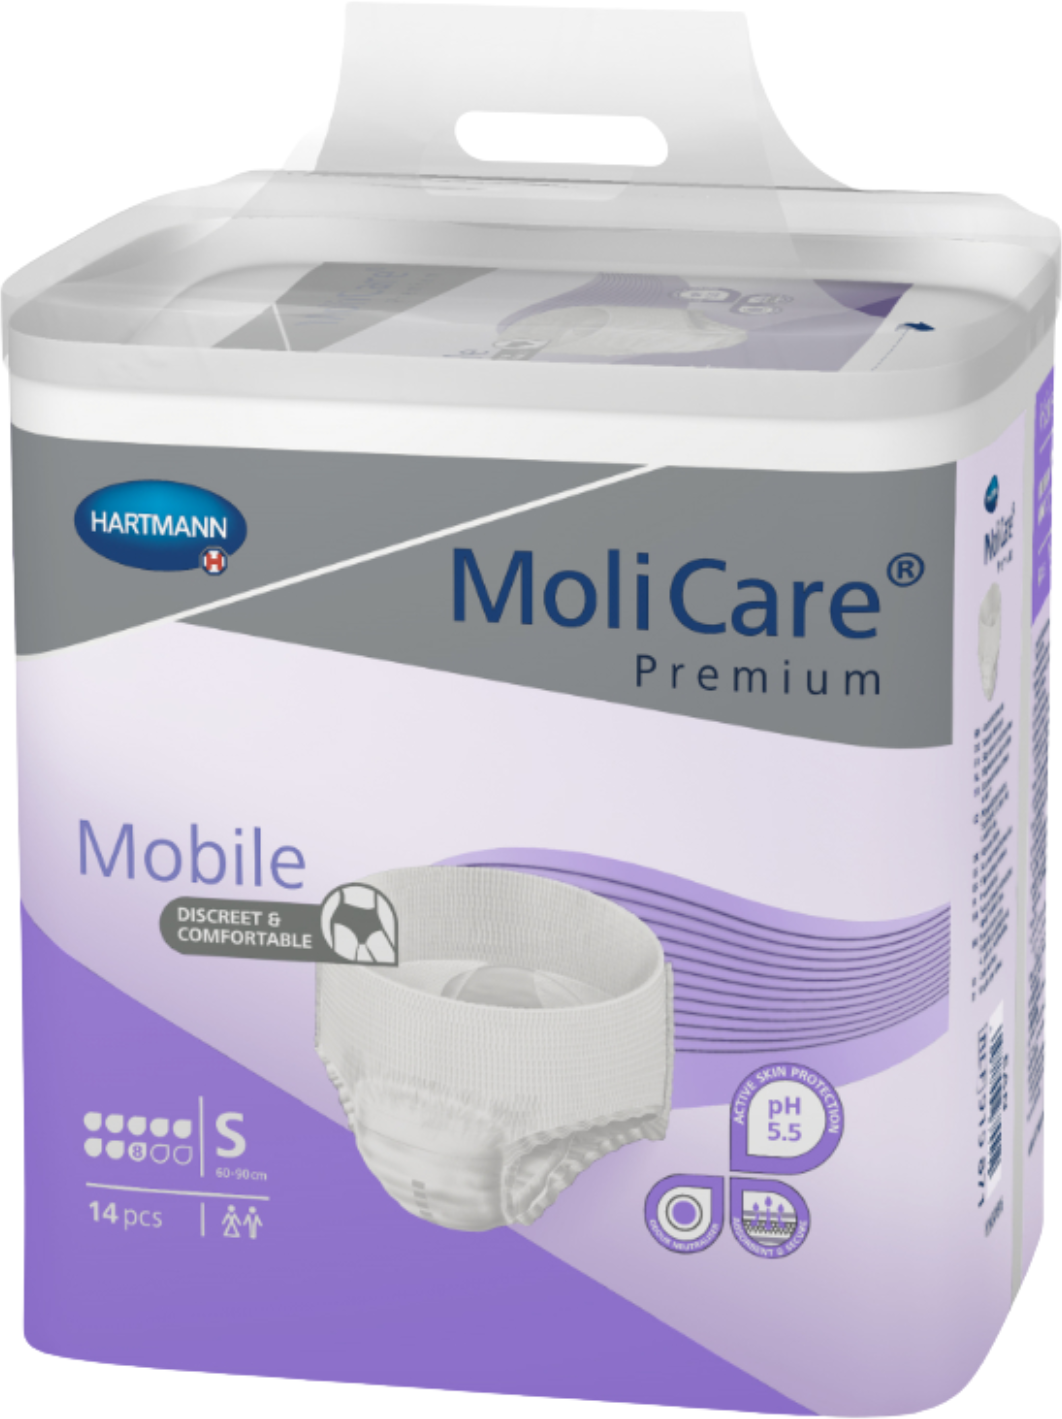 MoliCare Premium Mobile 8 Tropfen M / Beutel 14 Stück